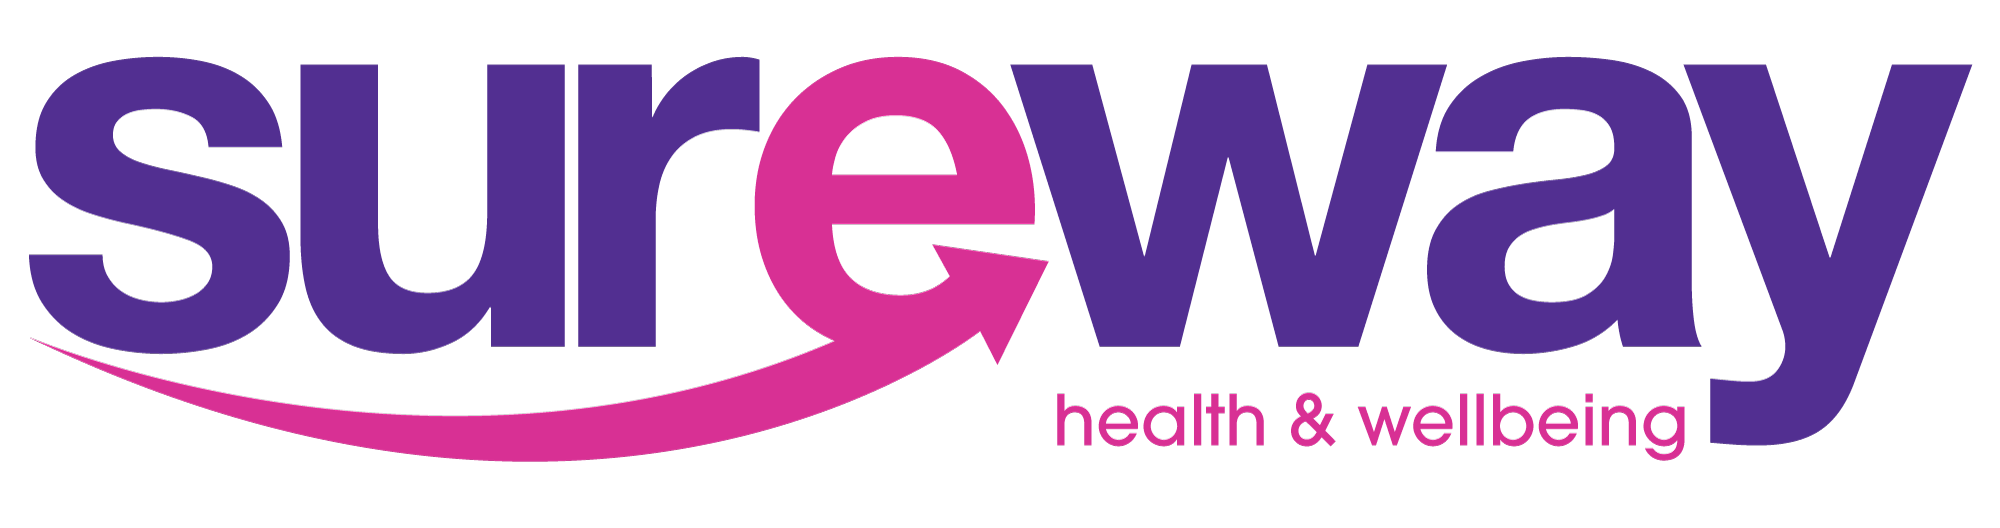 Sureway-Health-&-Wellbeing-logo